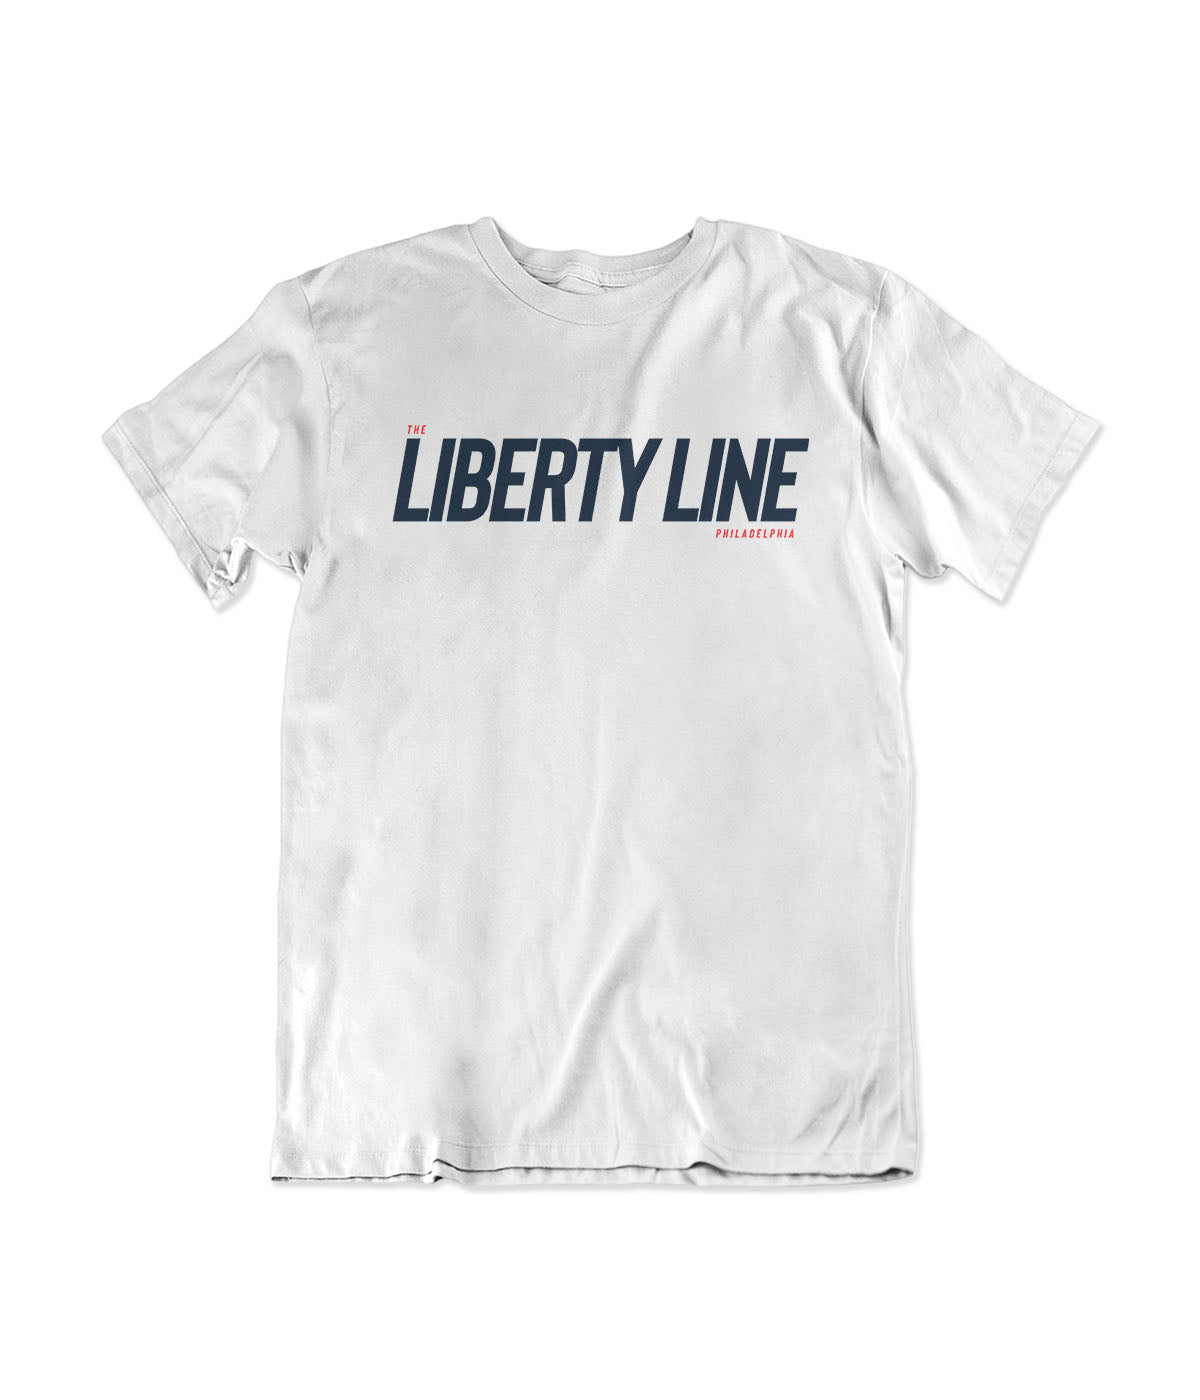 The Liberty Line Philadelphia